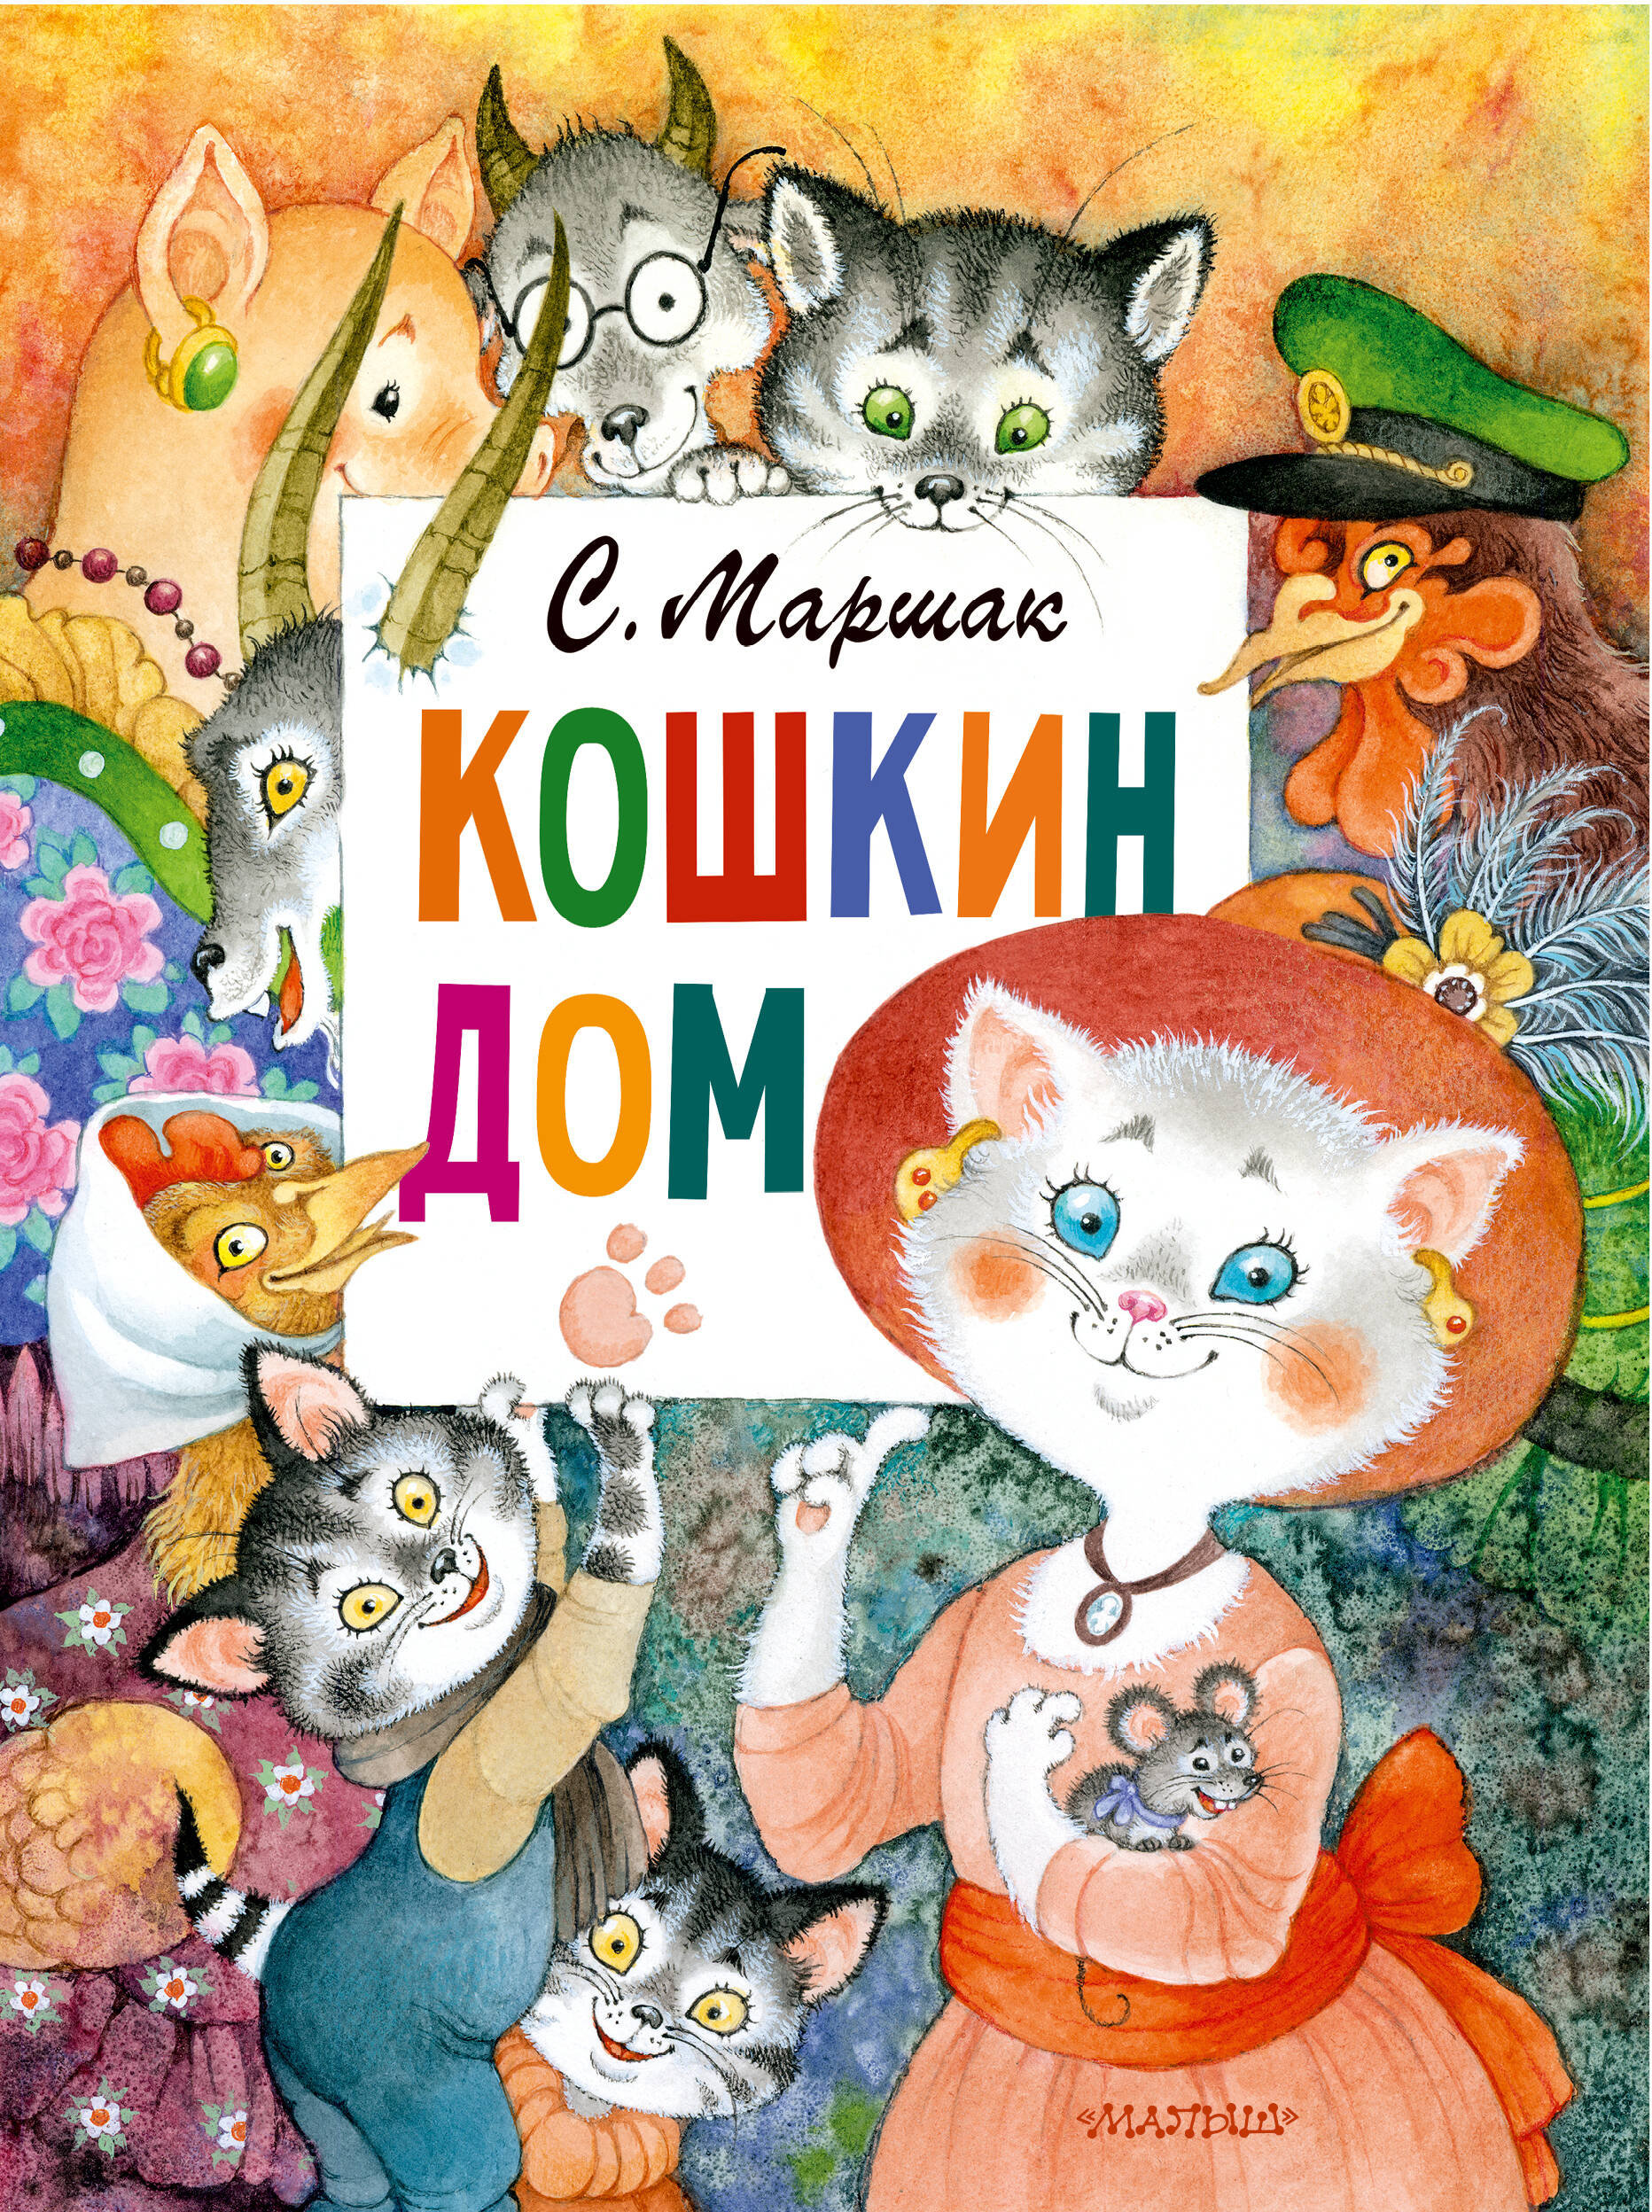 кошкин дом иллюстрации о ионайтис маршак с я Кошкин дом